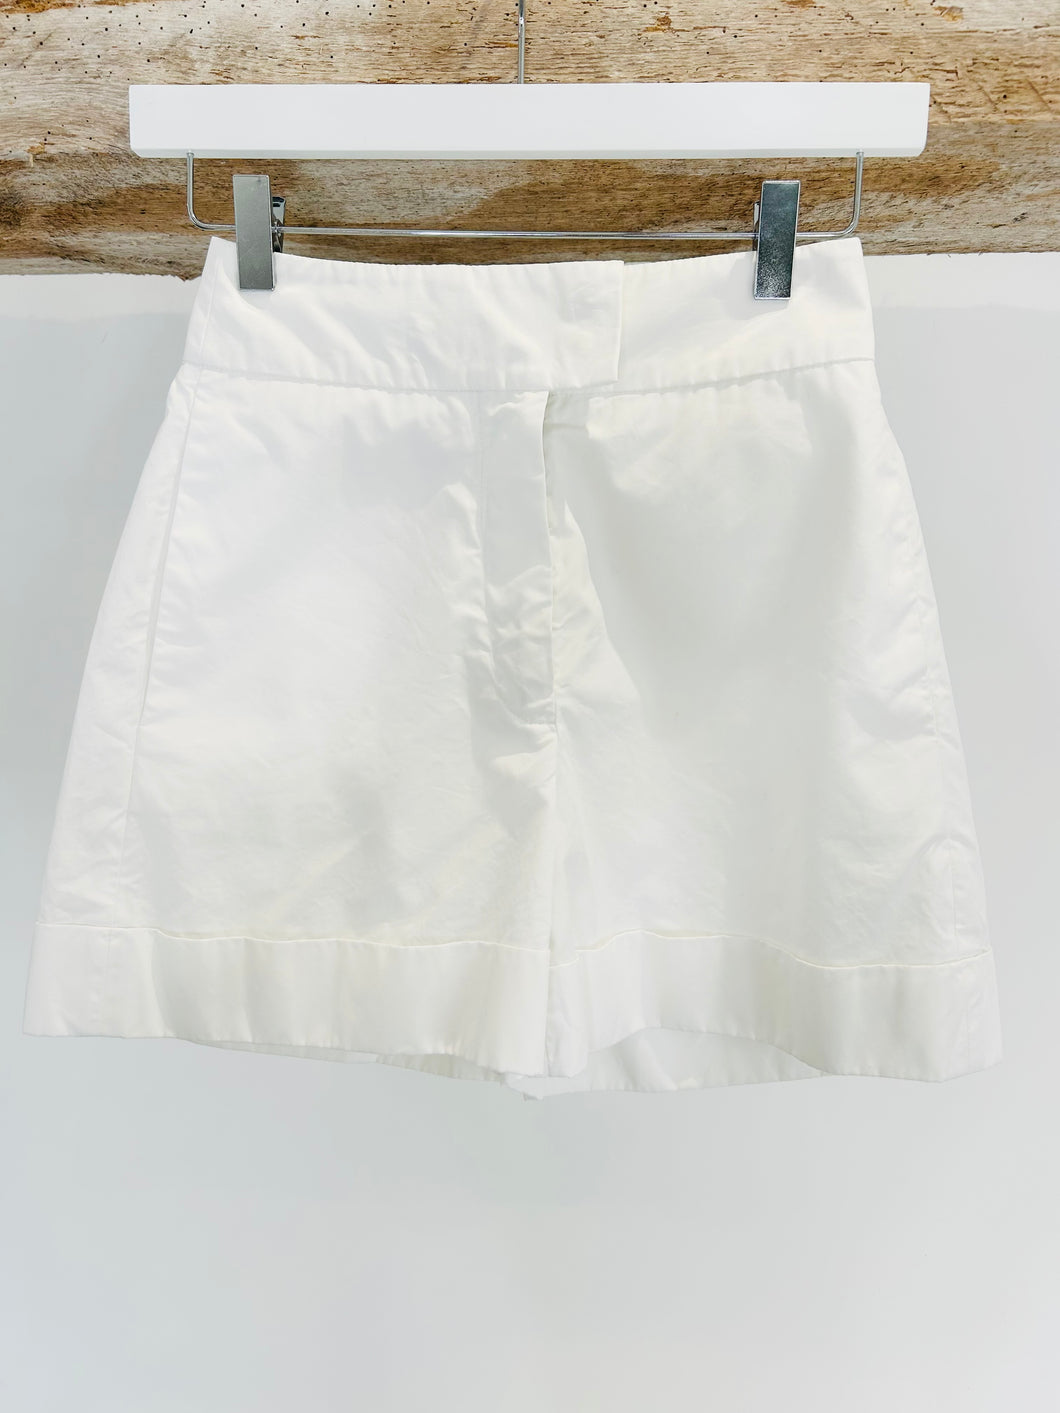 Cotton Shorts - Size 4